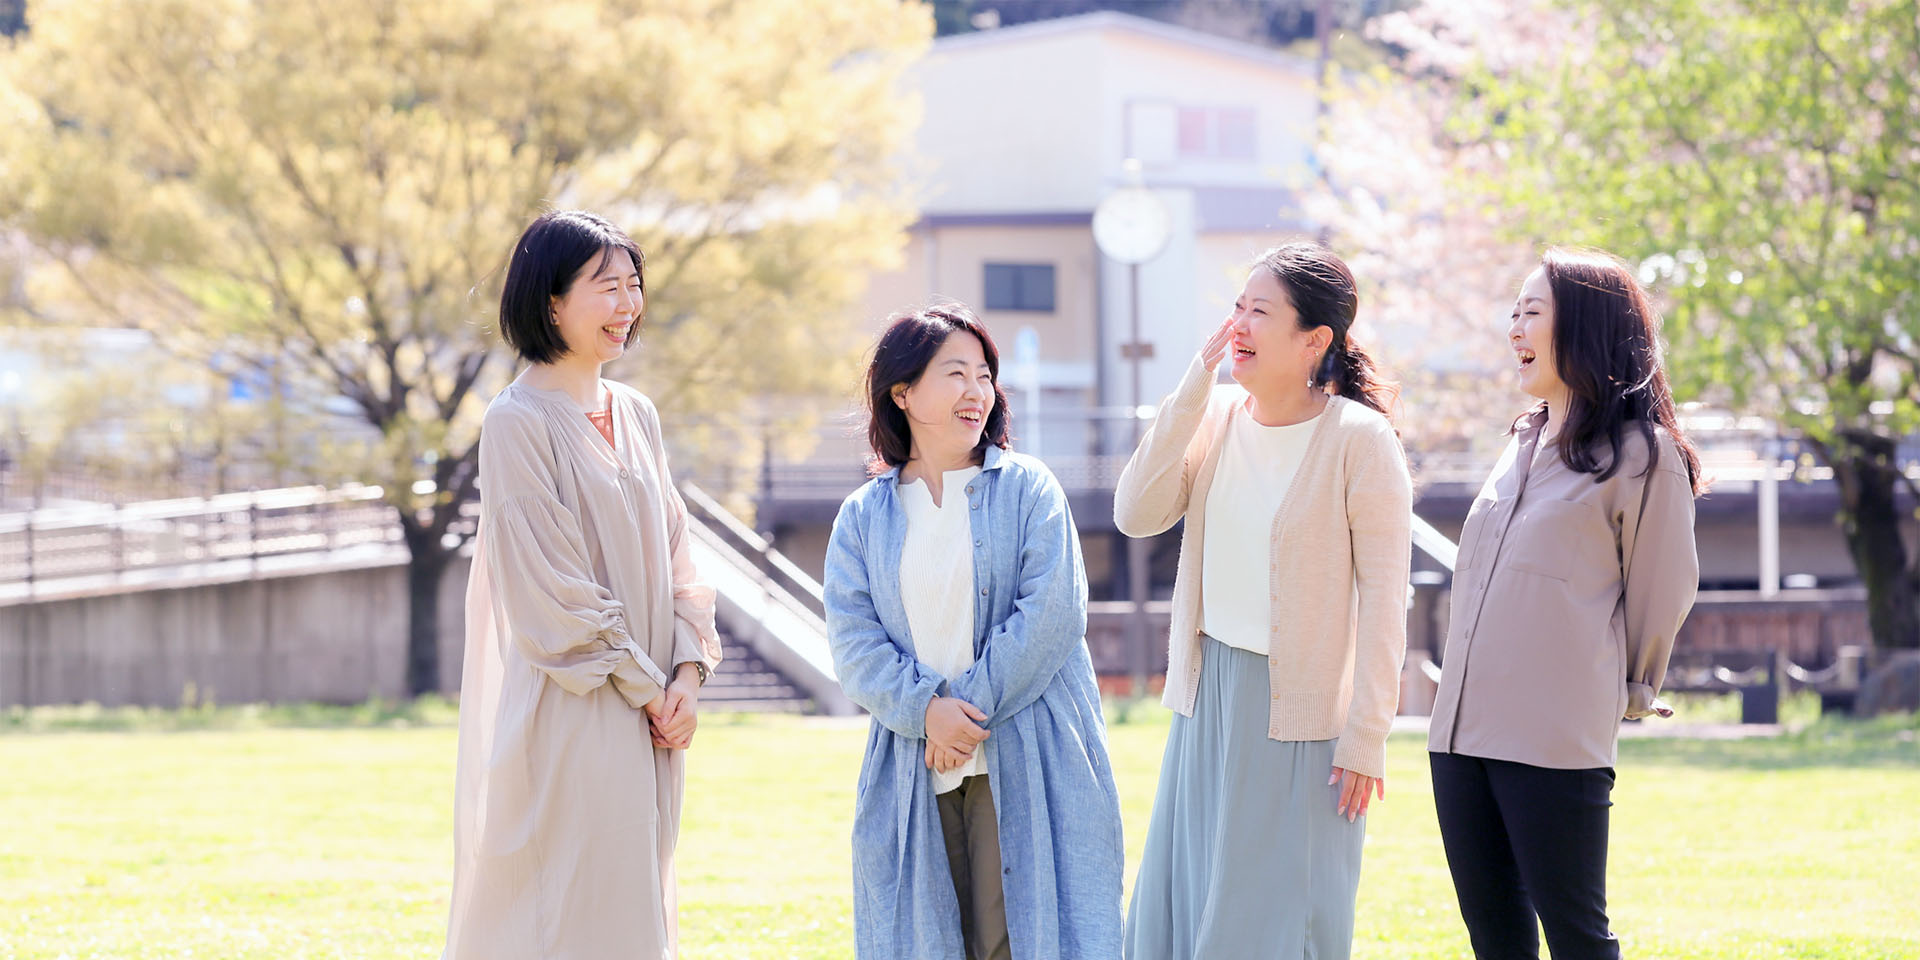 女性複数人が明るい広場で笑っている写真